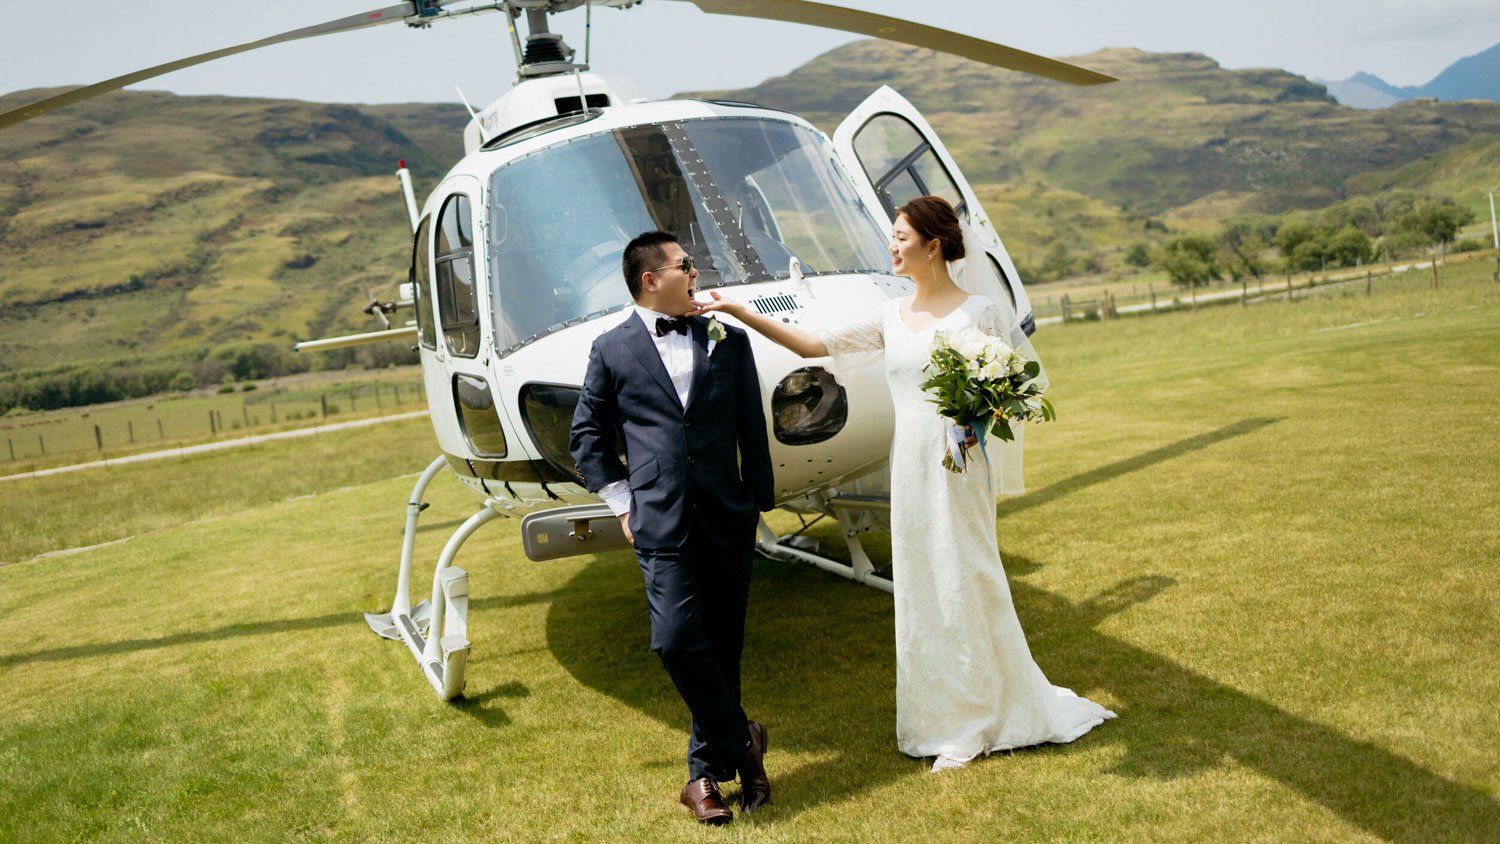 Queenstownn Canyons Lodge outdoor wedding elopement photographer Panda Bay Films-16.jpg